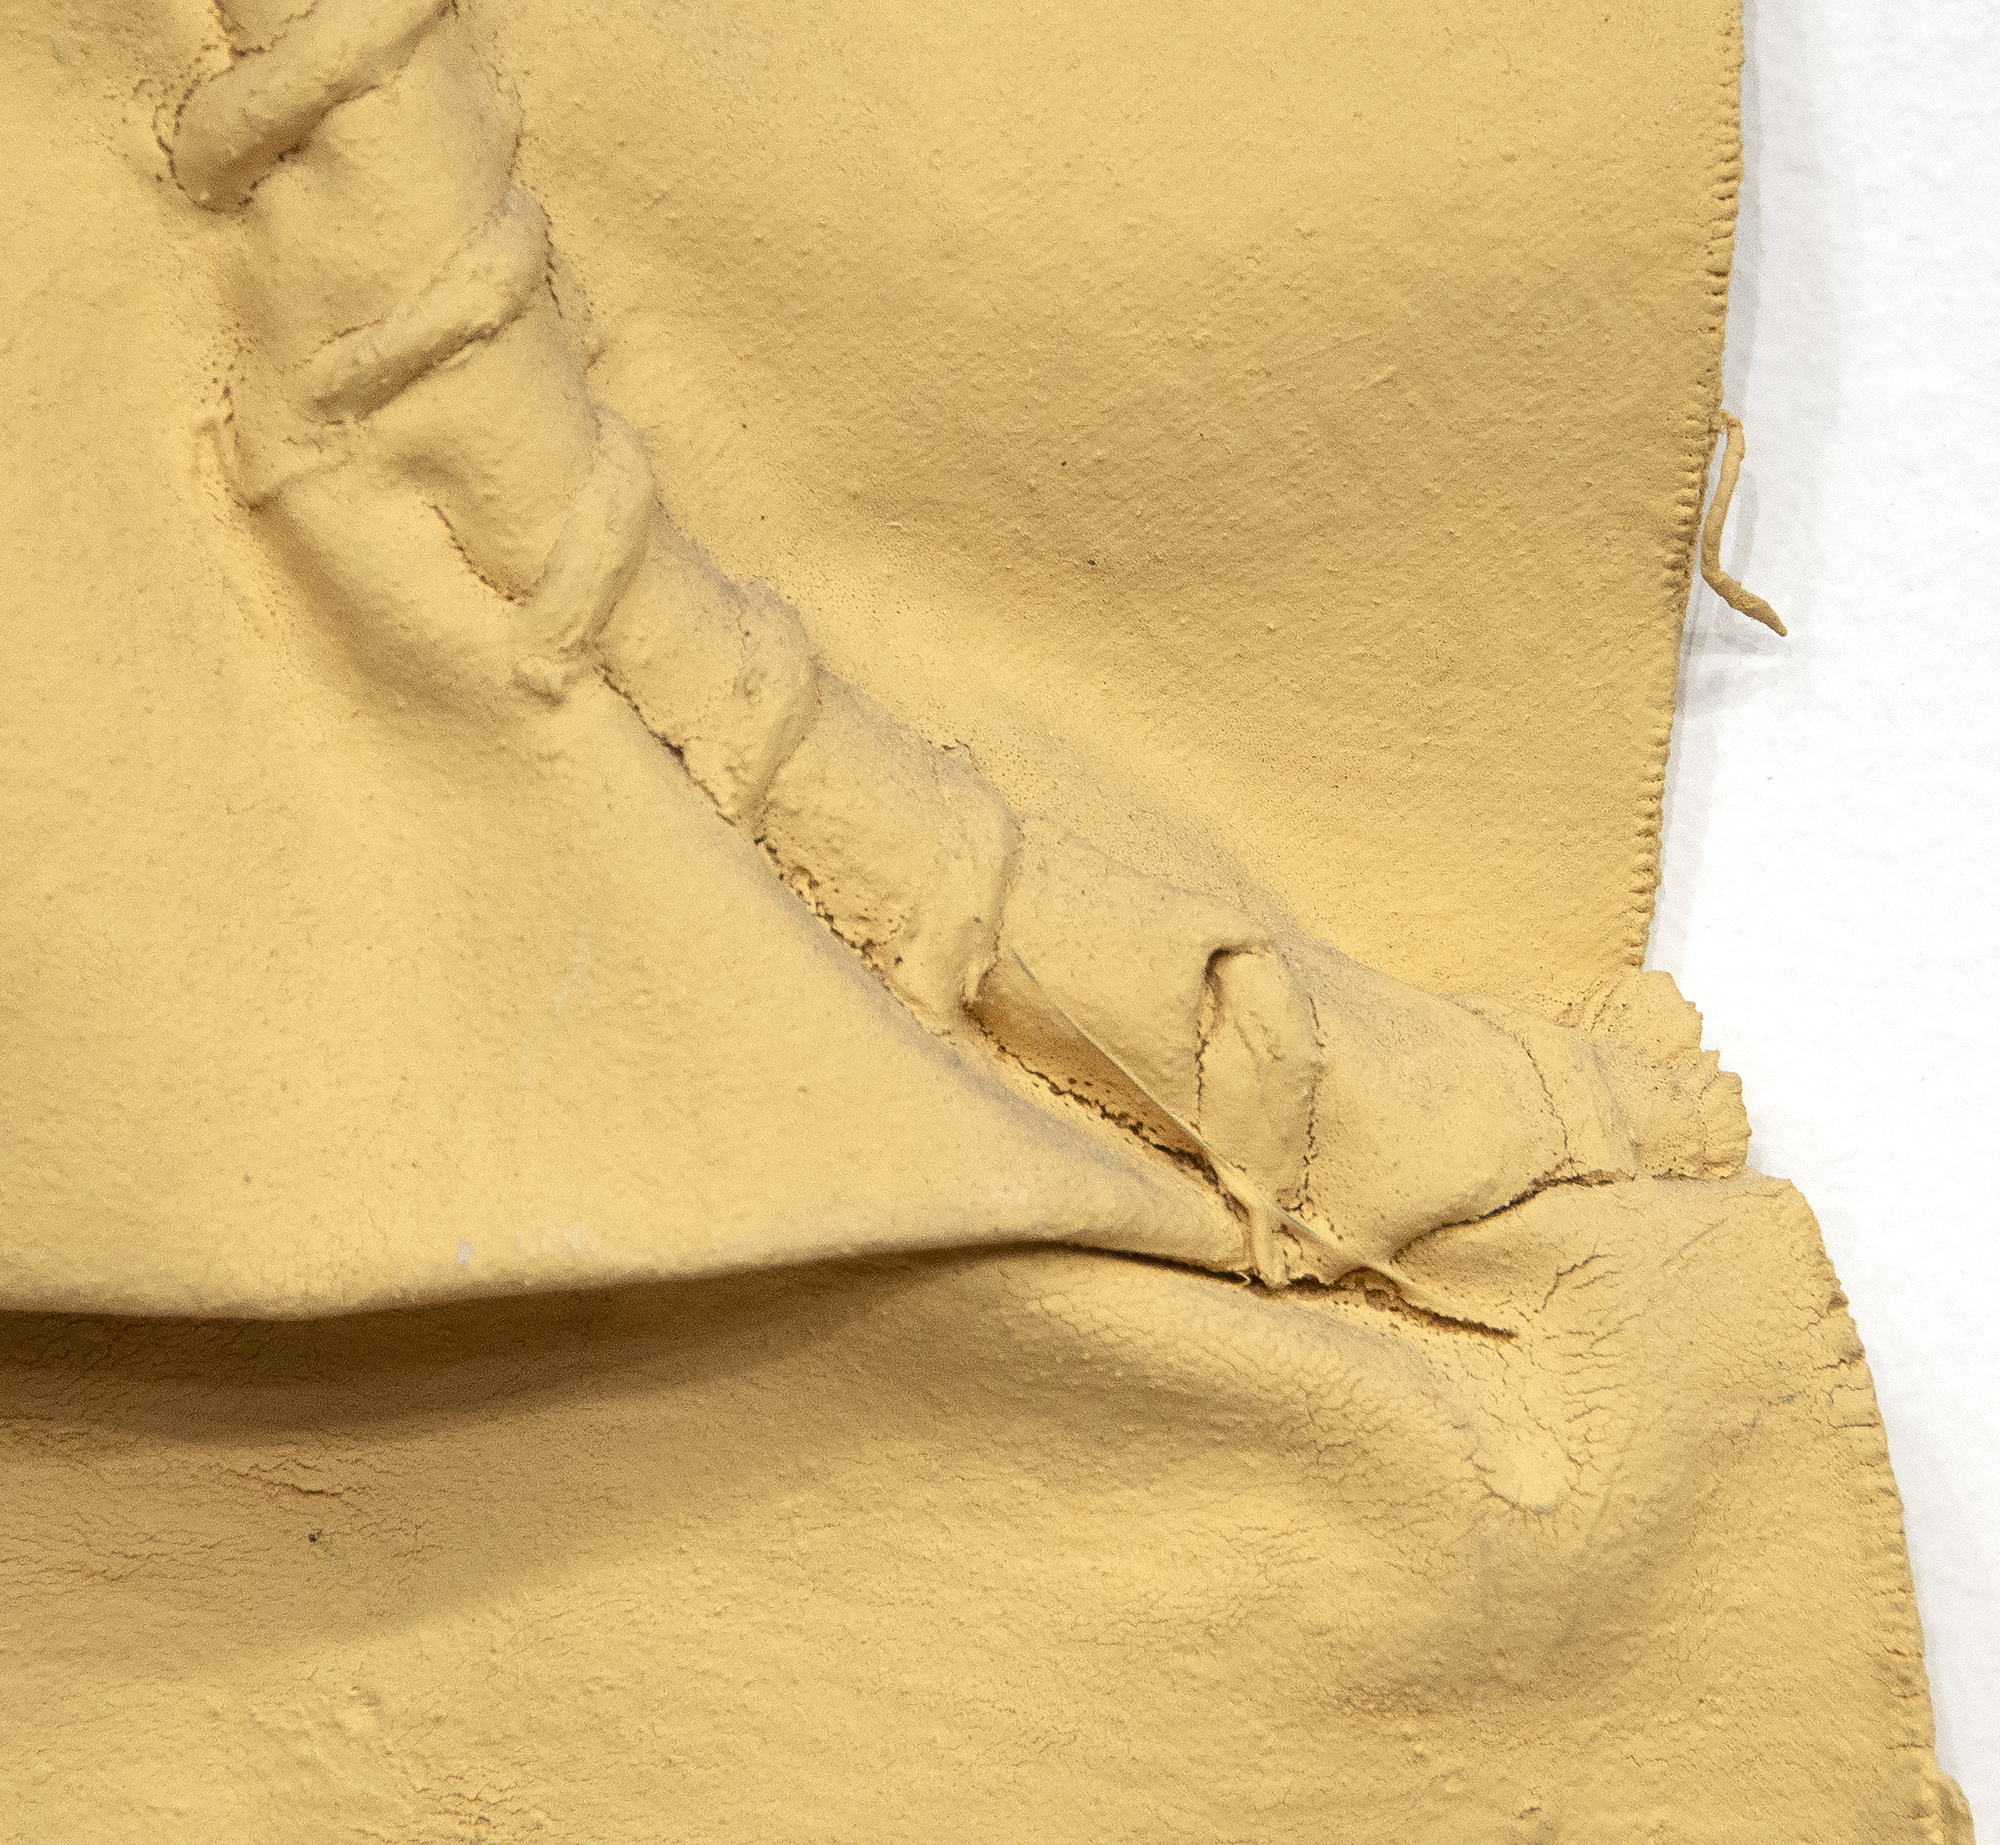 Richard Tuttle es un artista postminimalista estadounidense fundamental. La obra de Tuttle es conceptual y meditativa, cruzando los límites de la escultura, la pintura y la poesía, y a menudo desafiando al espectador. Untitled (Cloth and Paint Work #2) de 1973, un período crucial en la carrera del artista, evoca el minimalismo anterior de su carrera mientras que empuja hacia el arte conceptual basado en lo material. En la obra rinde homenaje a los readymades de Marcel Duchamp. Los textiles, como en esta pieza, juegan un papel importante en su obra y se convierten en sitios en los que enfocar la actuación, el compromiso y el significado.